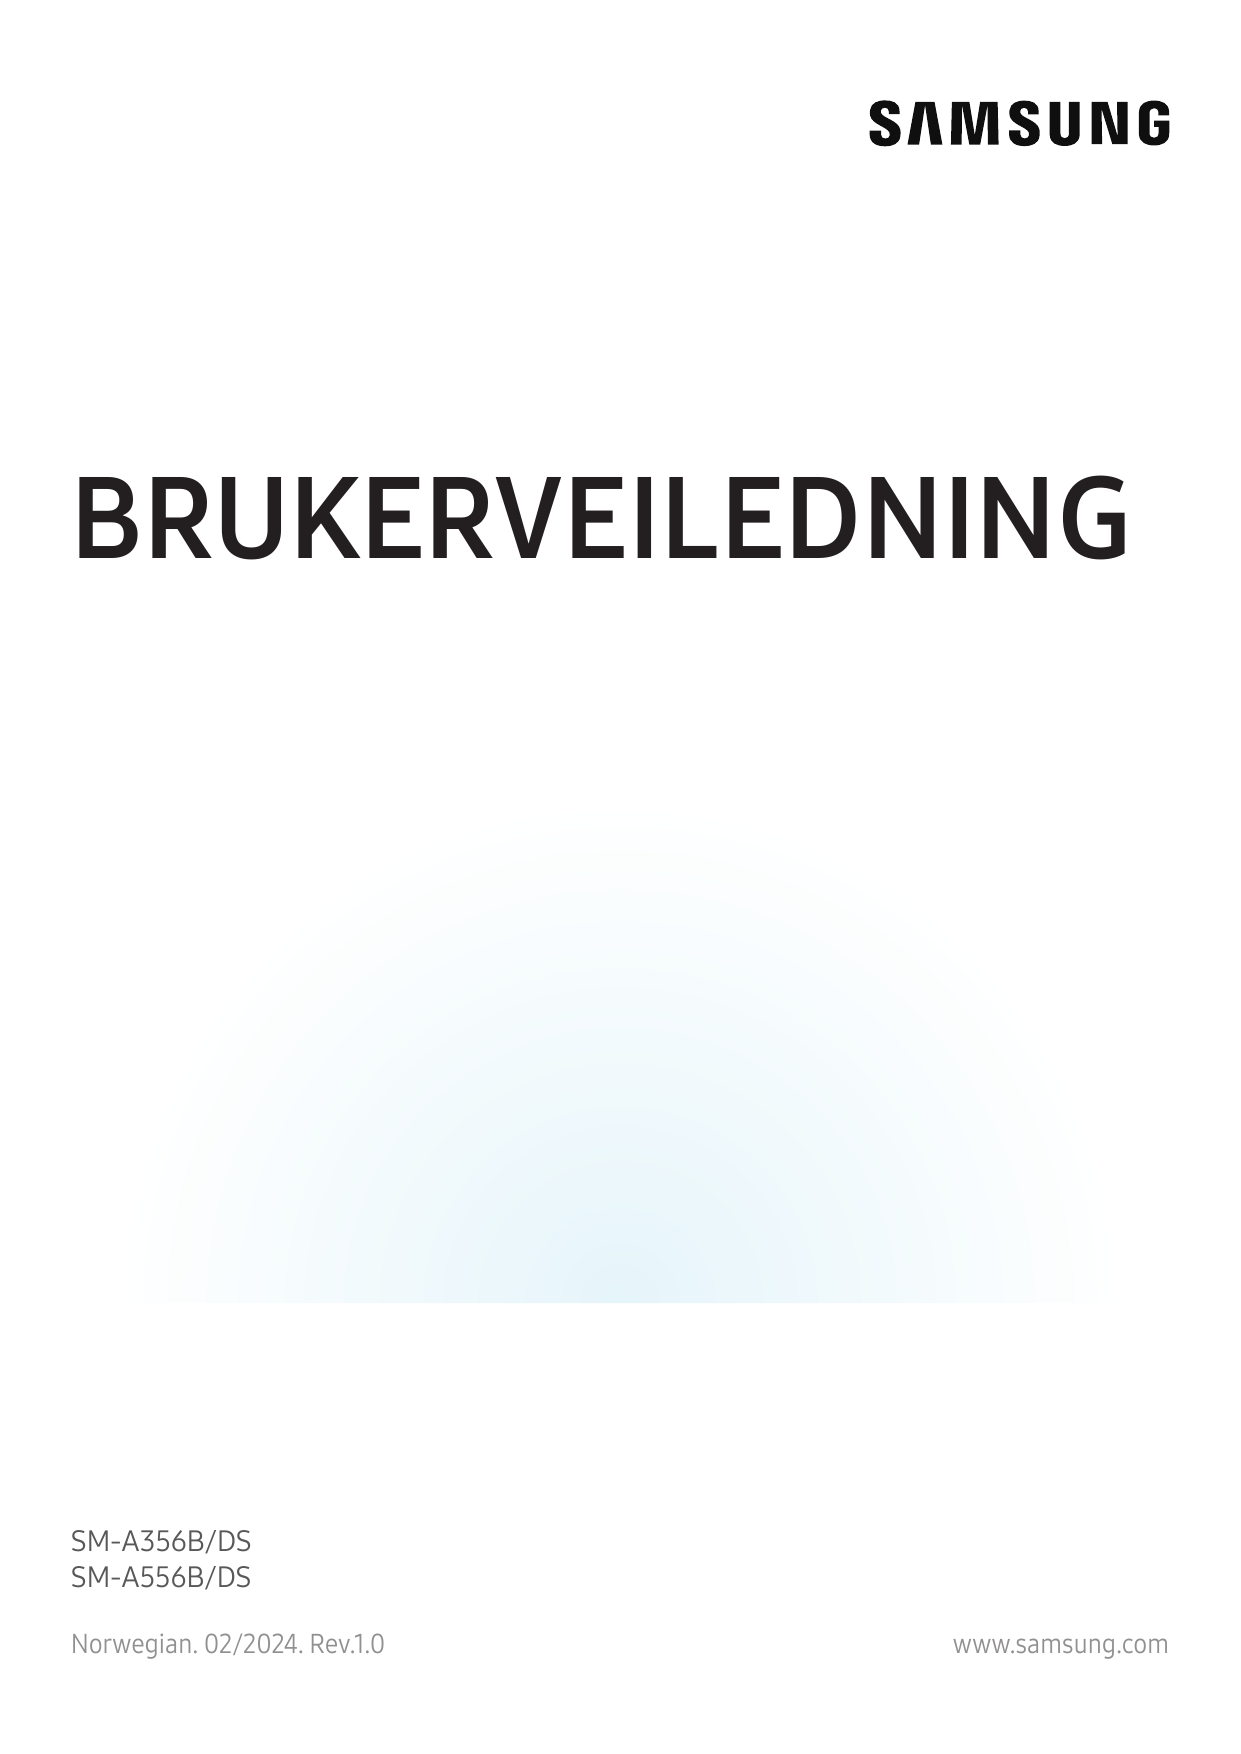 BRUKERVEILEDNINGSM-A356B/DSSM-A556B/DSNorwegian. 02/2024. Rev.1.0www.samsung.com